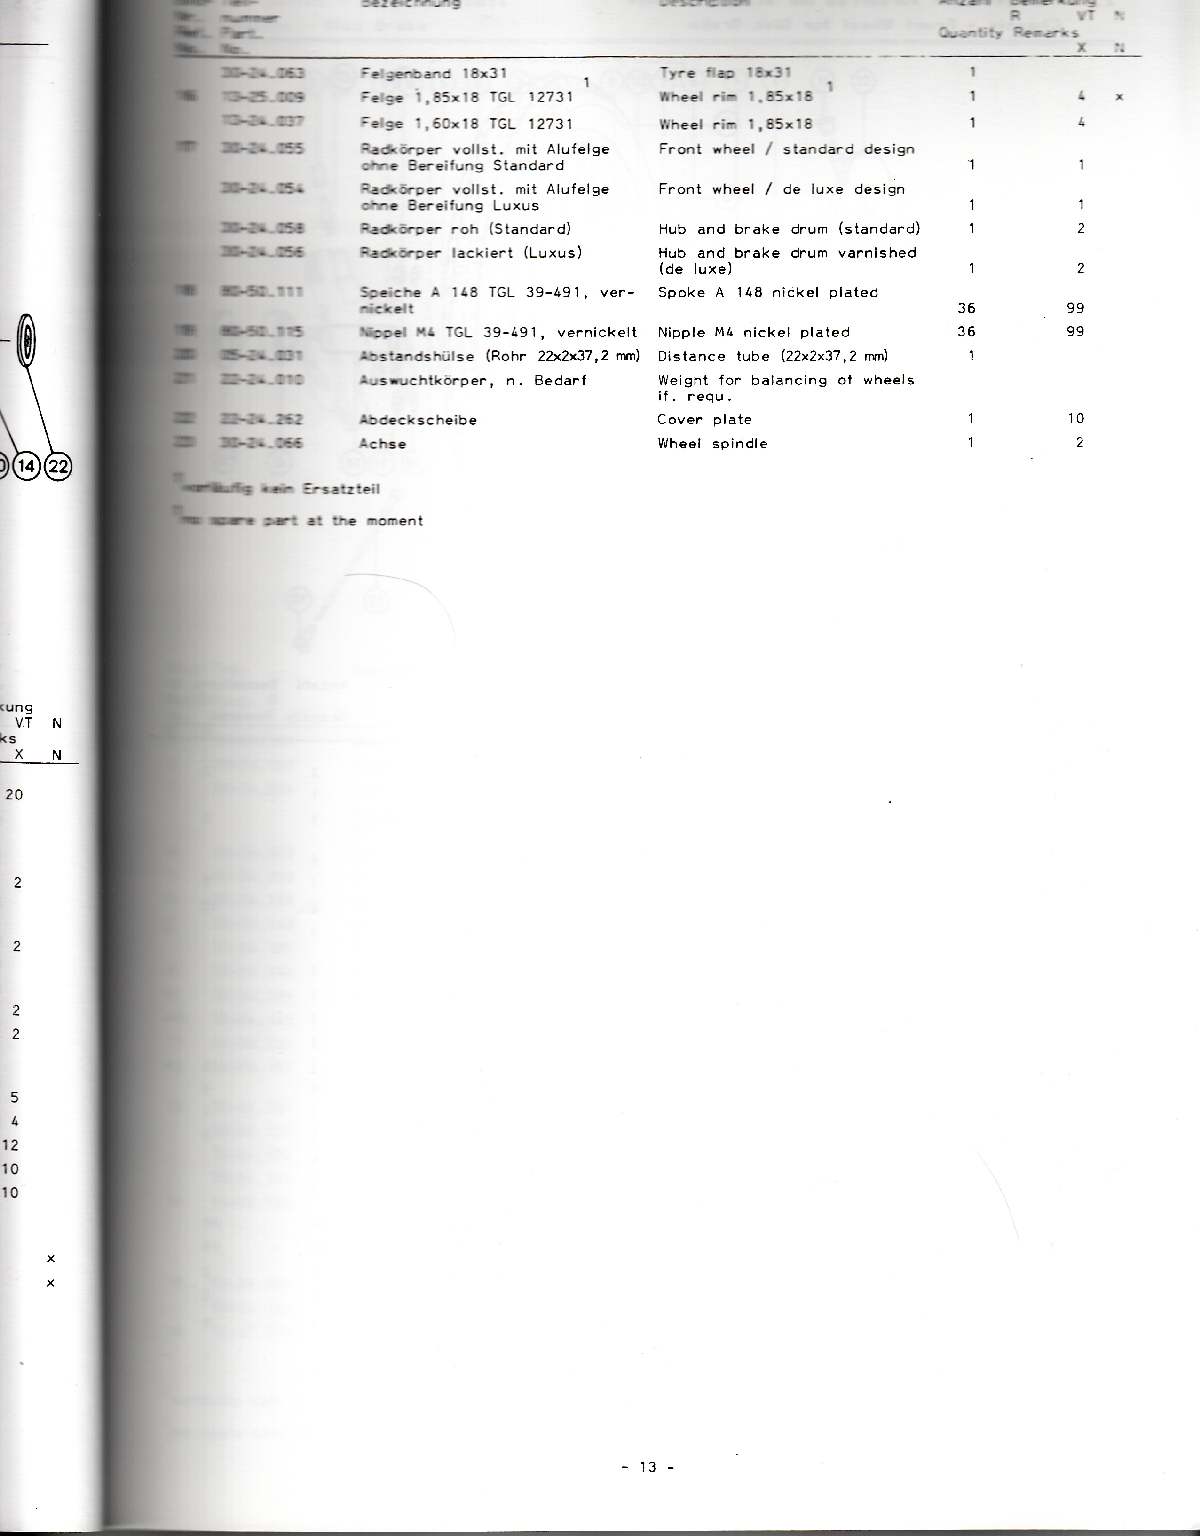 Katalog MZ 251 ETZ - 2.6. Fahrgestell - Vorderrad für Trommelbremse